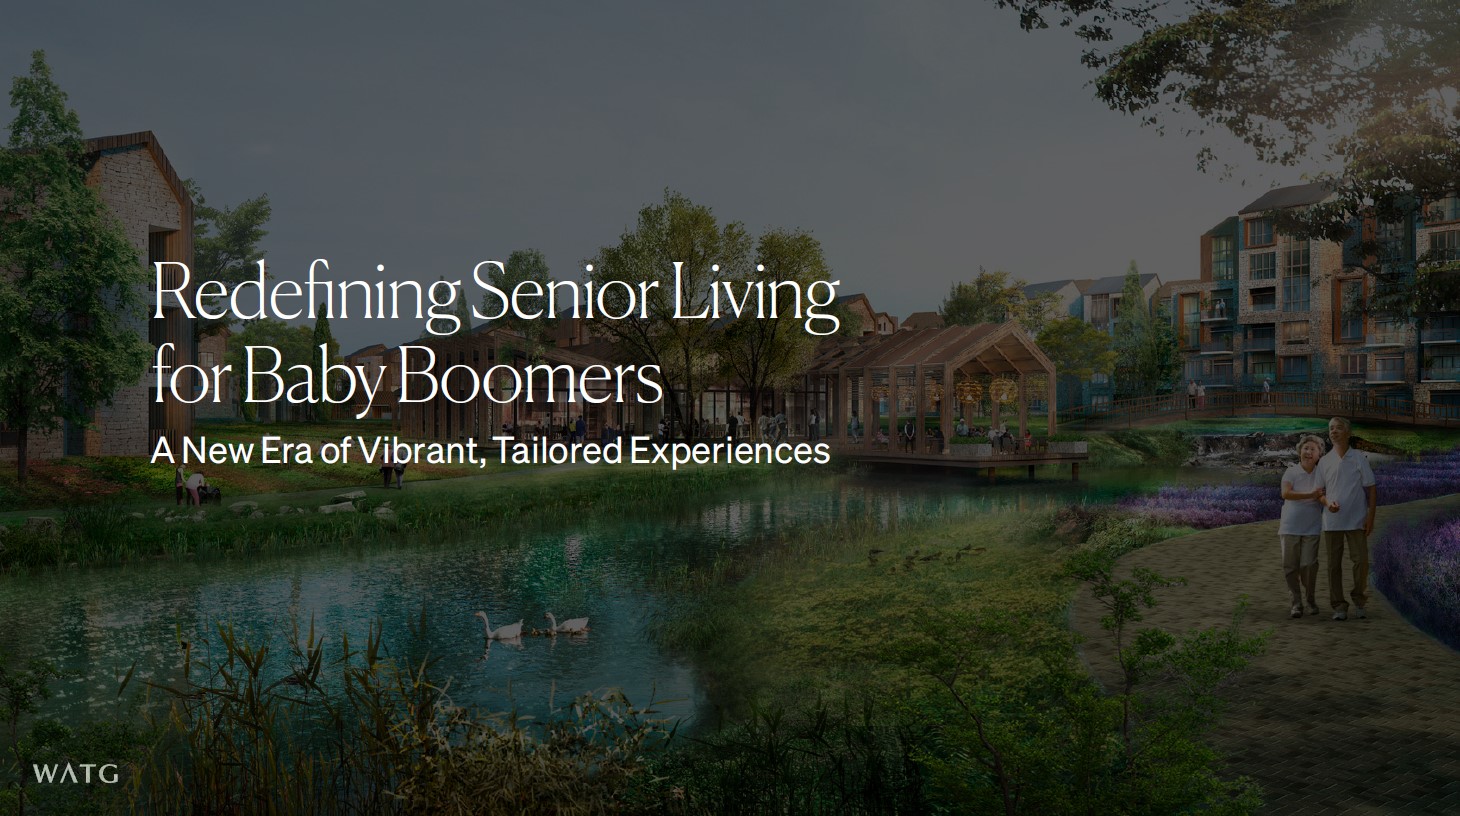 baby boomer trends for senior living